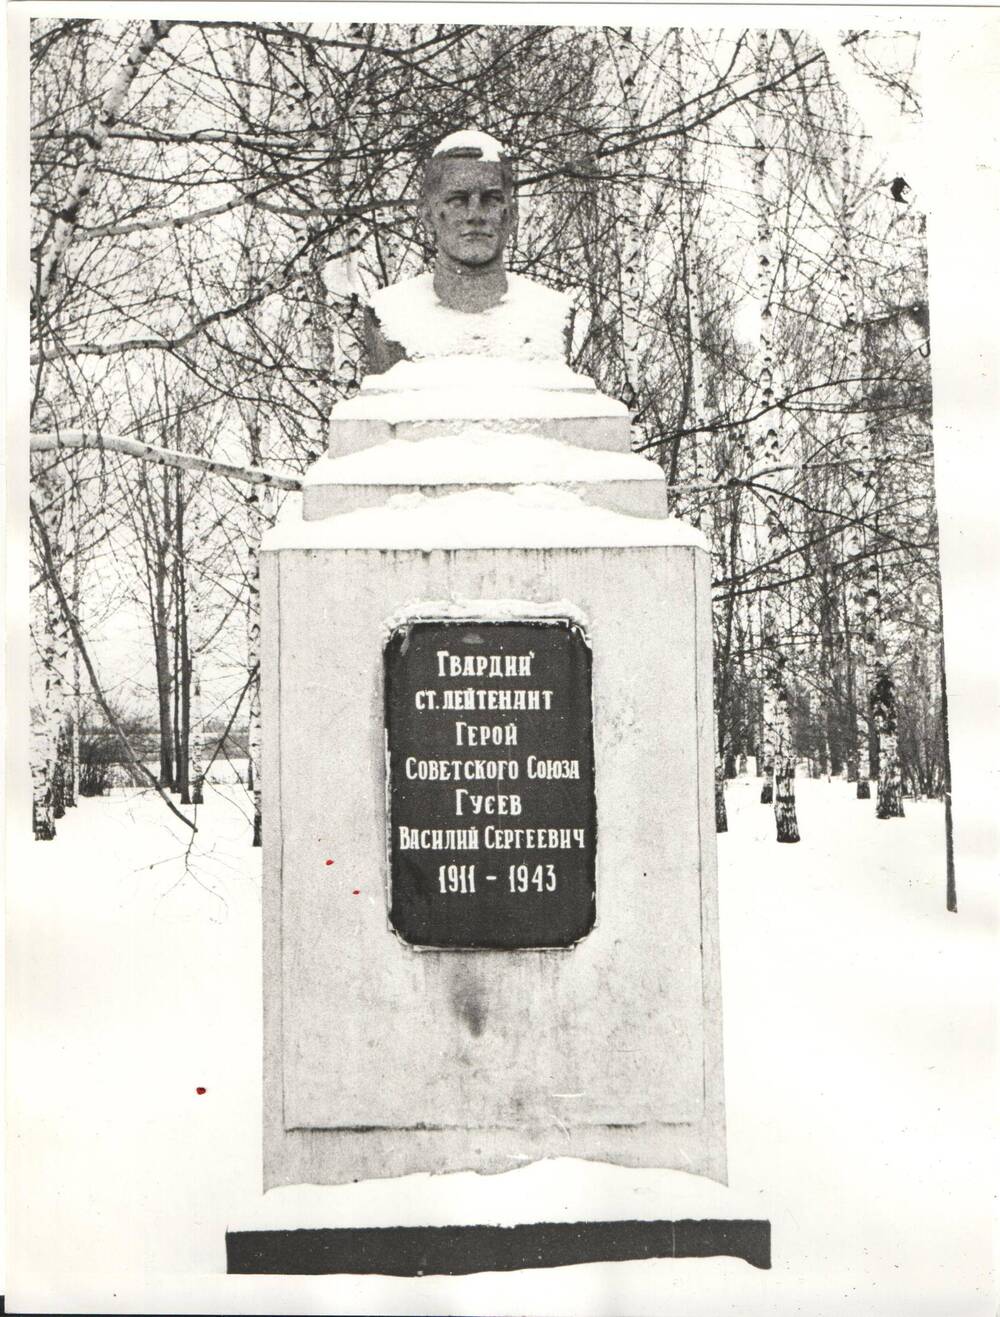 Фотография. Памятник в честь Победы в Великой Отечественной войне, село Гусево, 1995 г